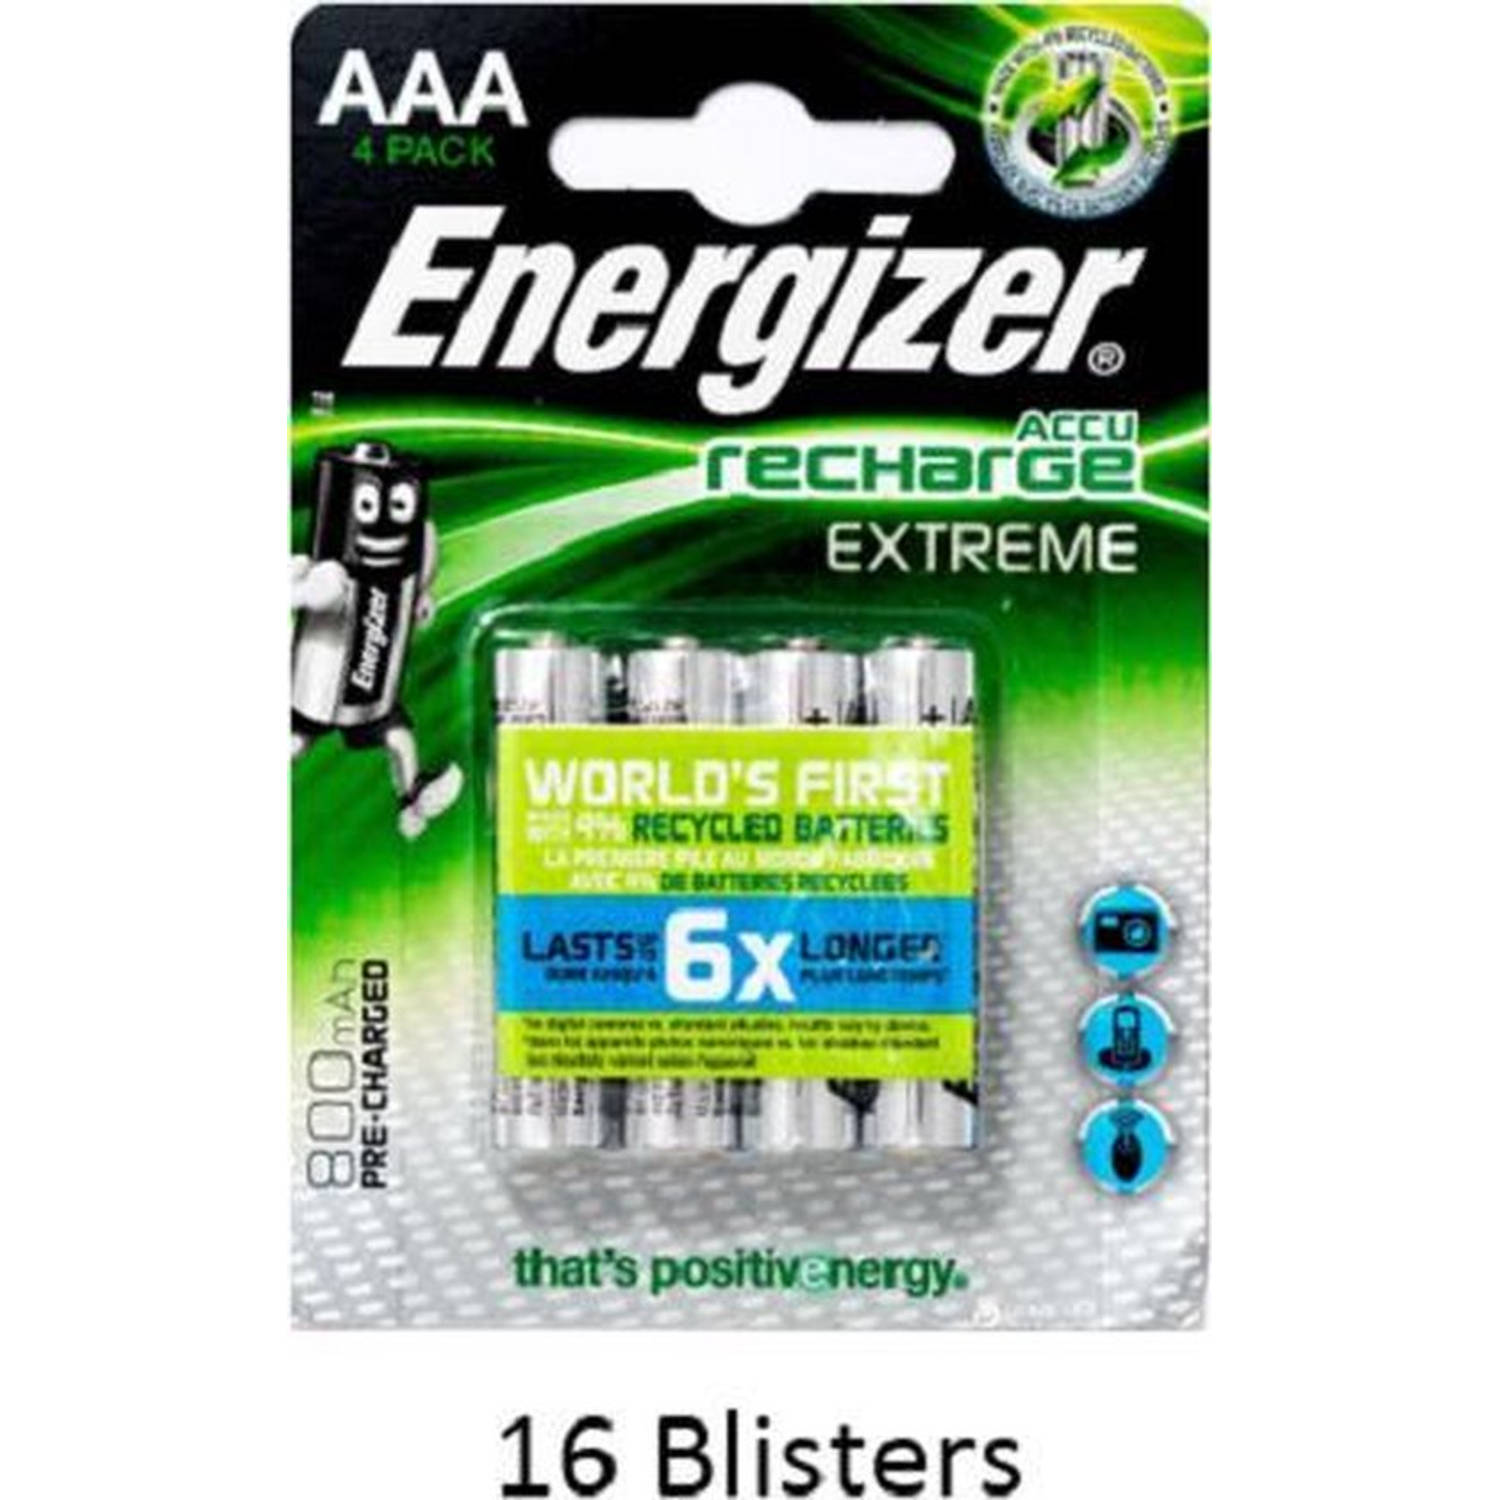 64 stuks (16 blisters a 4 stuks) Energizer Extreme AAA Oplaadbaar 800 mAh